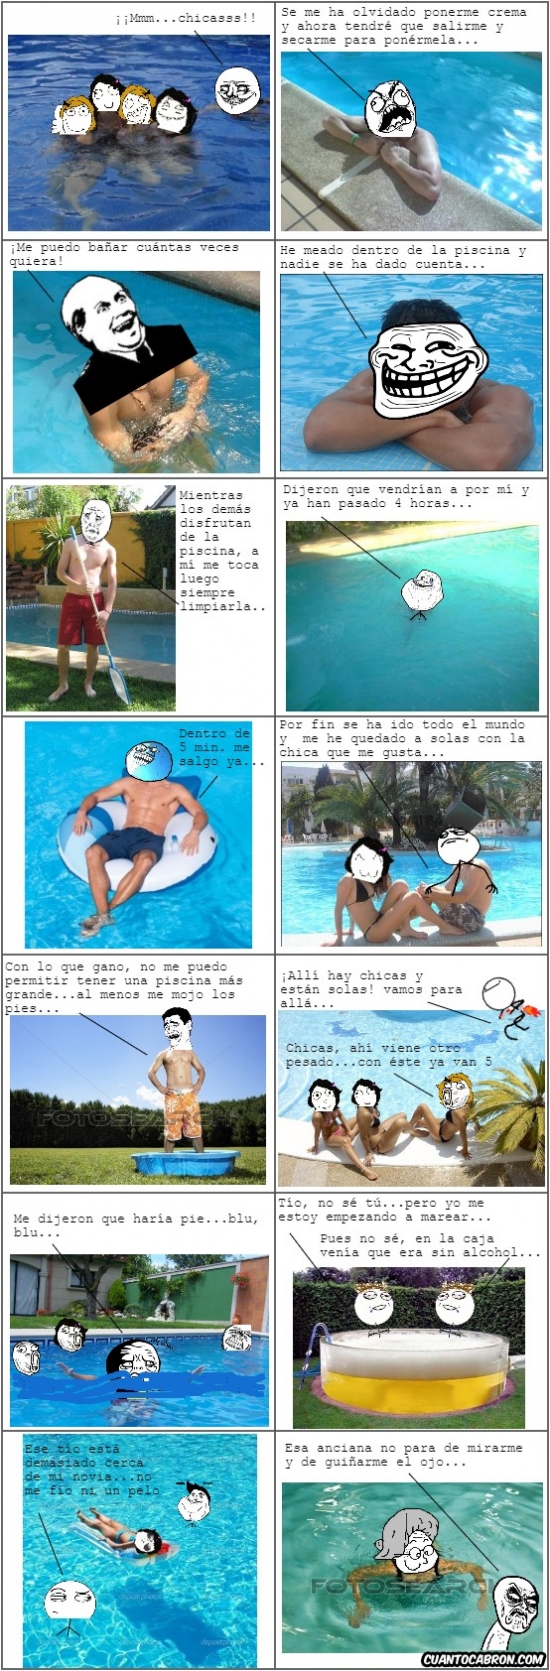 cc,cuanto cabrón,memes,piscina,piscina de casa particular,piscina privada,piscina pública,verano